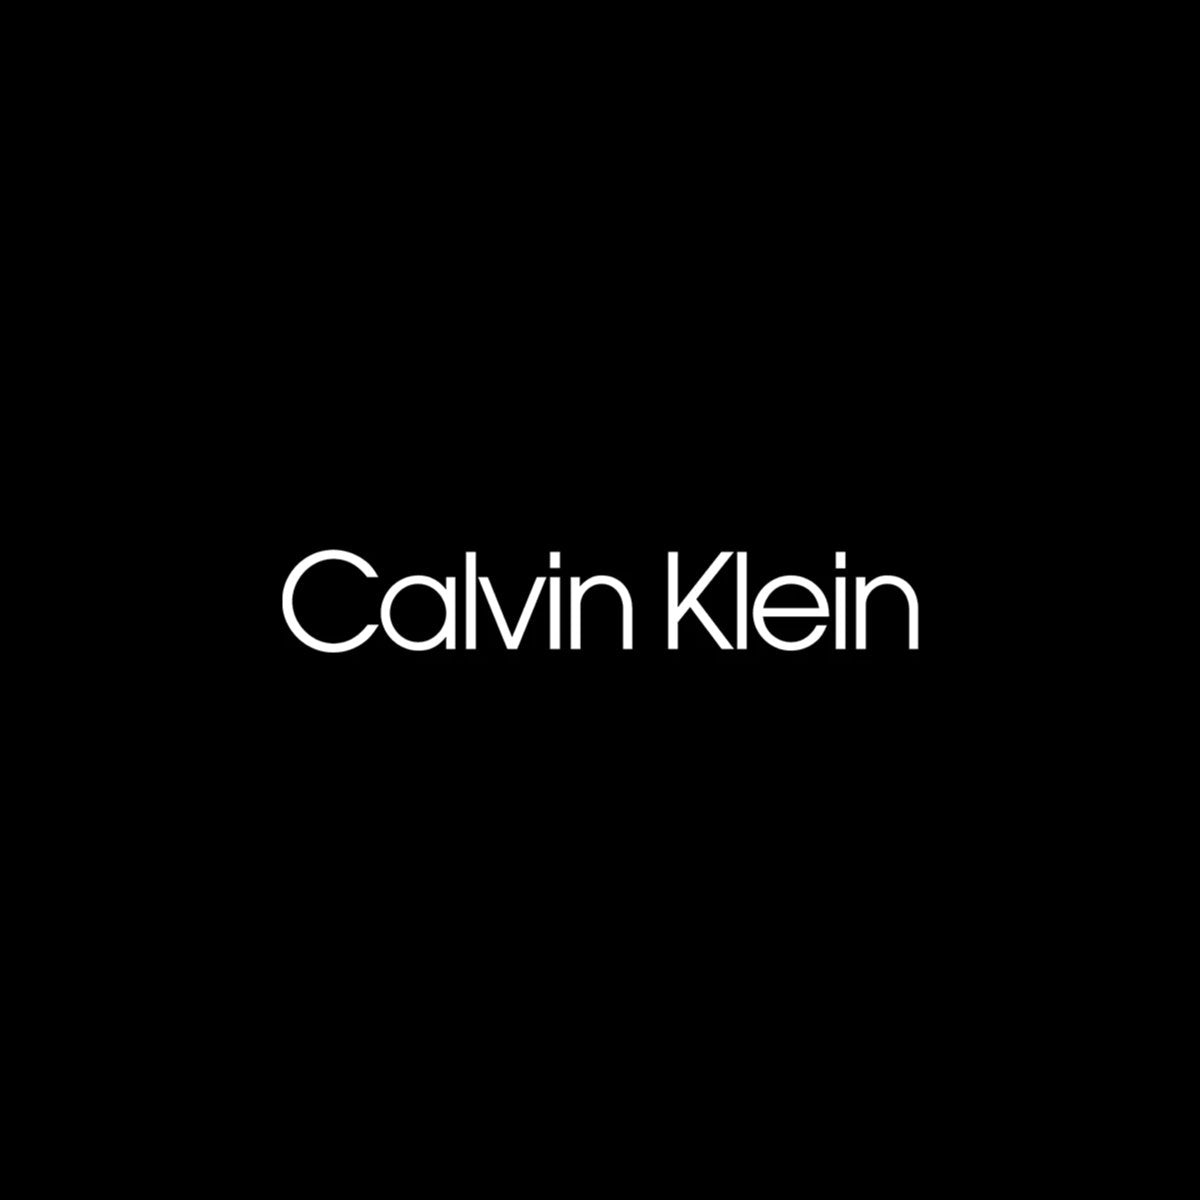 Calvin Klein (קלווין קליין)